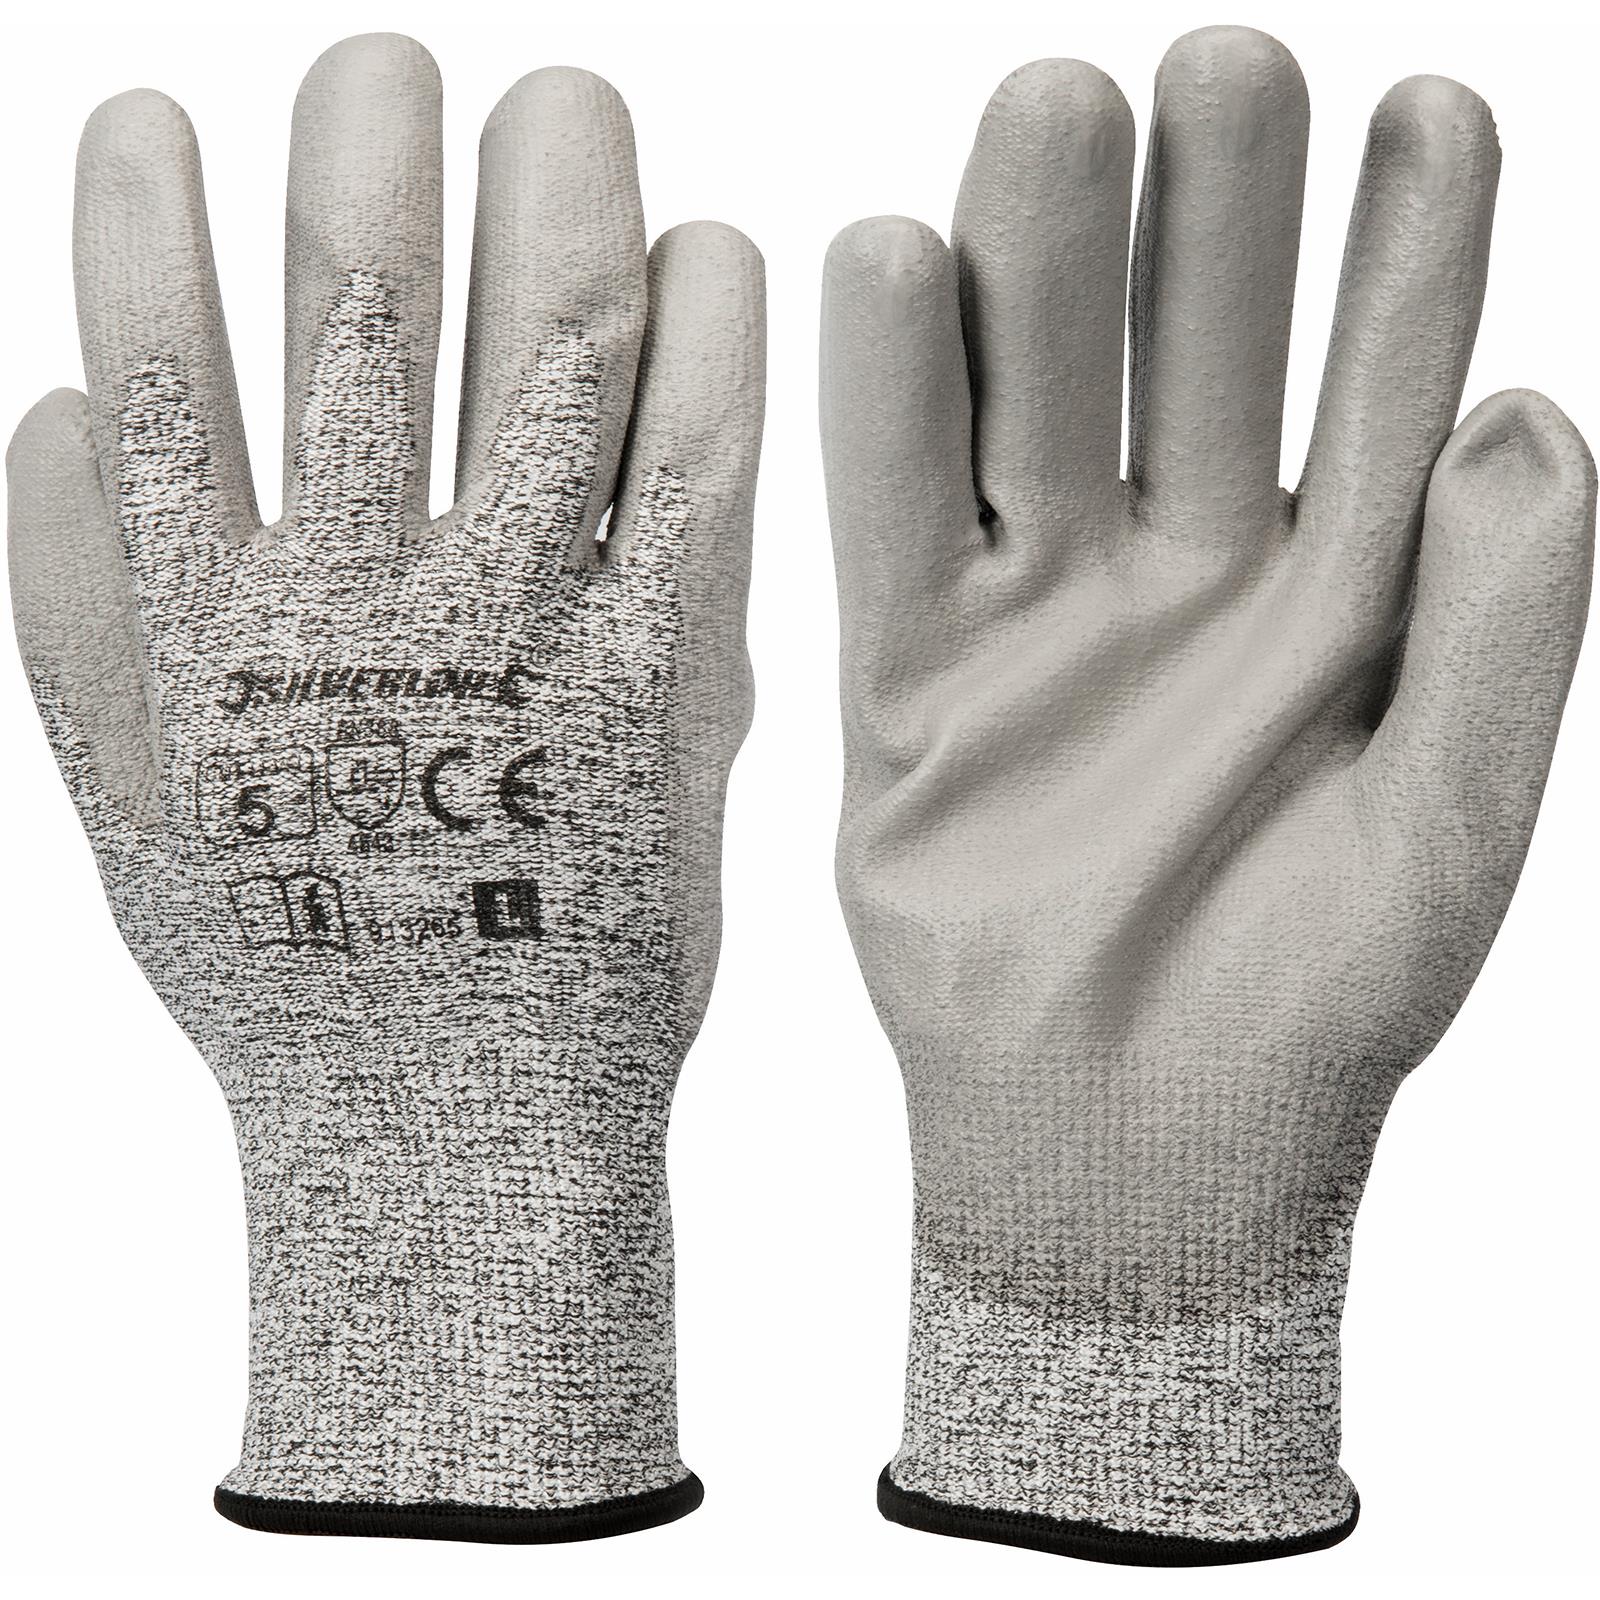 Silverline Large CUT 5 Gloves Kevlar Abrasion Tear Puncture Safety Work Builders